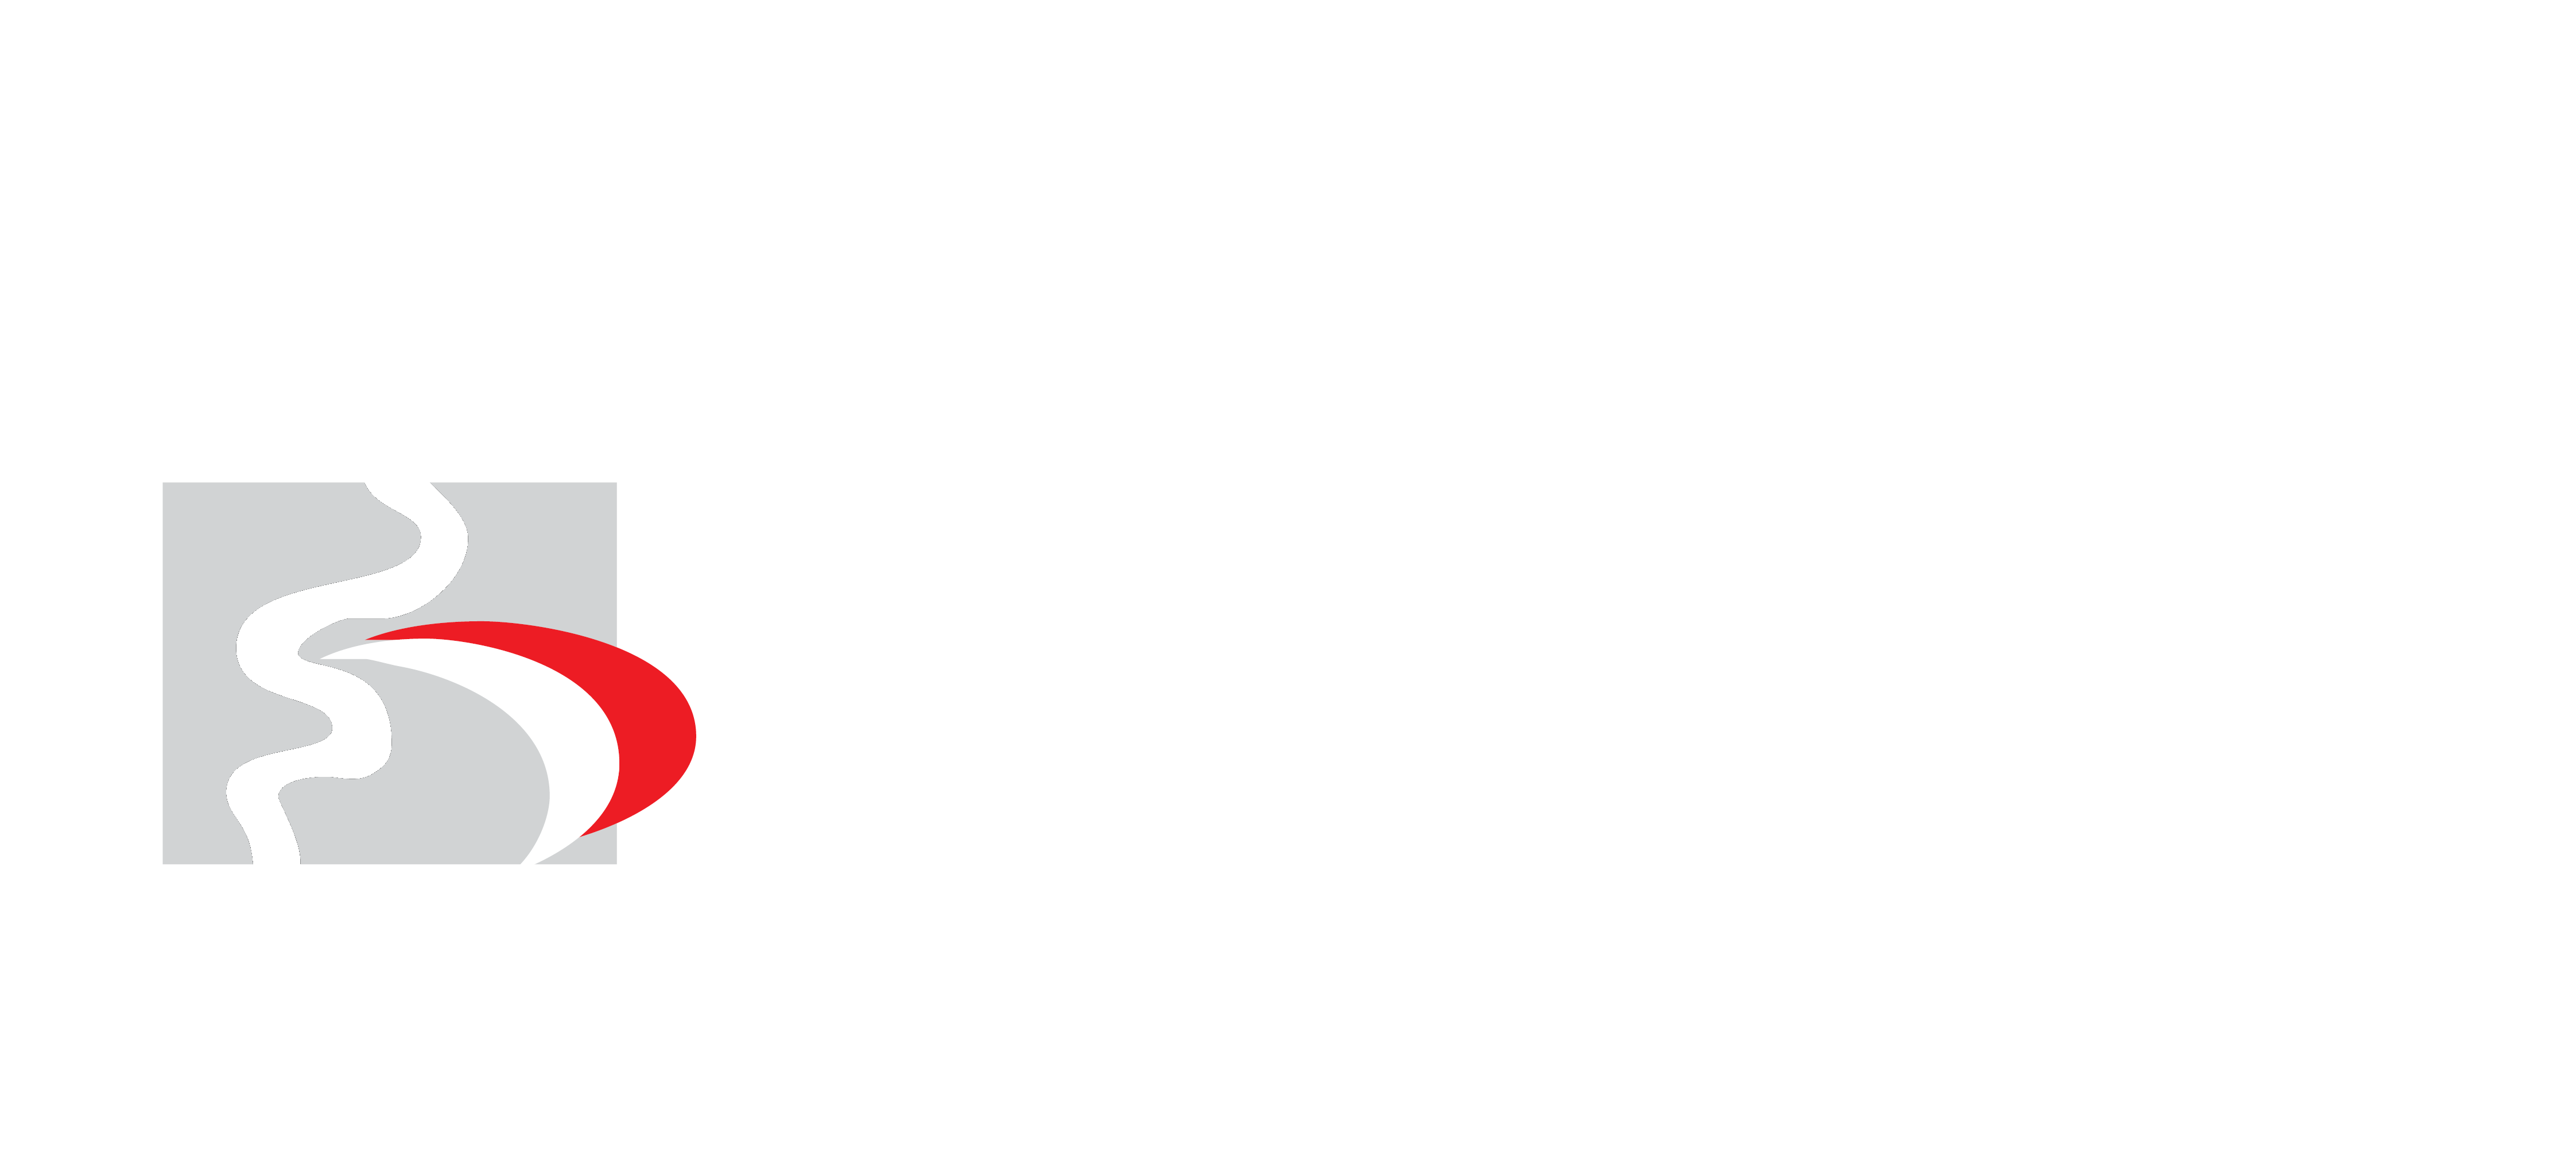 Kunsill Nazzjonali tal-Ilsien Malti